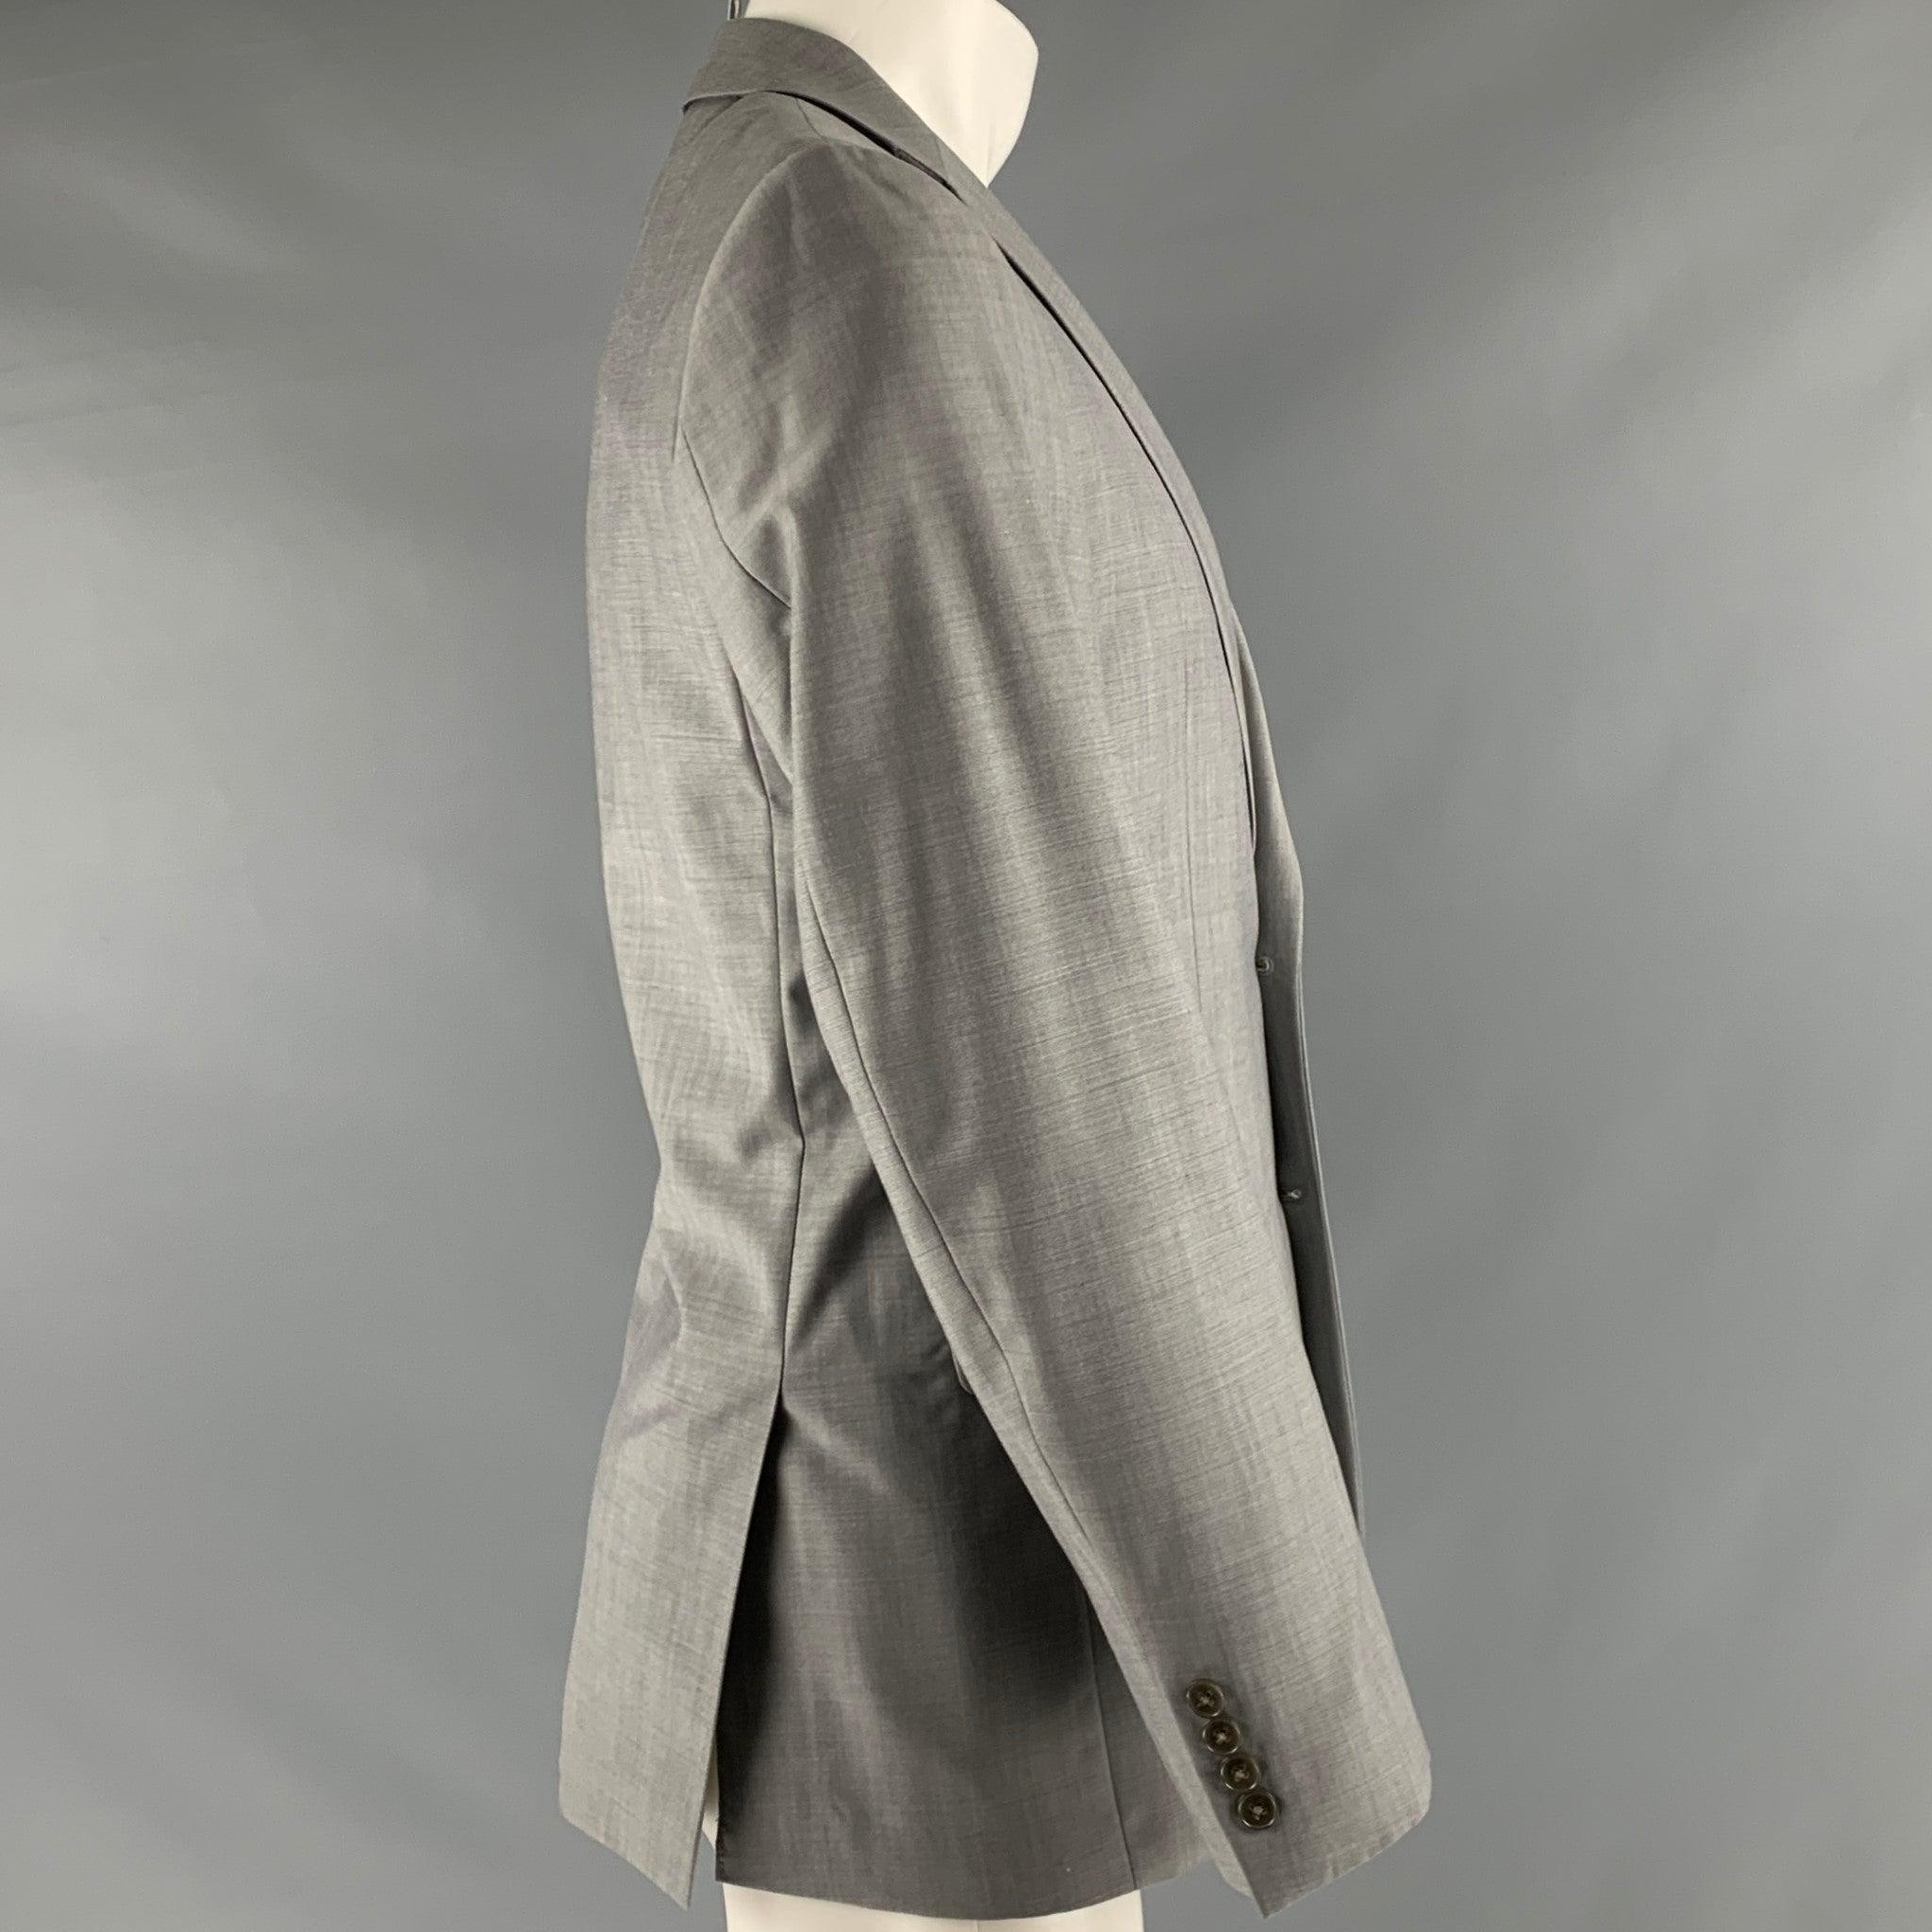 Manteau de sport CALVIN KLEIN en laine grise avec une doublure grise. Manteau de sport à une seule poitrine, deux boutons, avec un revers à cran. Marques mineures. 

Marqué :   48 

Mesures : 
 
Epaule : 17 pouces  Poitrine : 38 pouces  Manches : 26